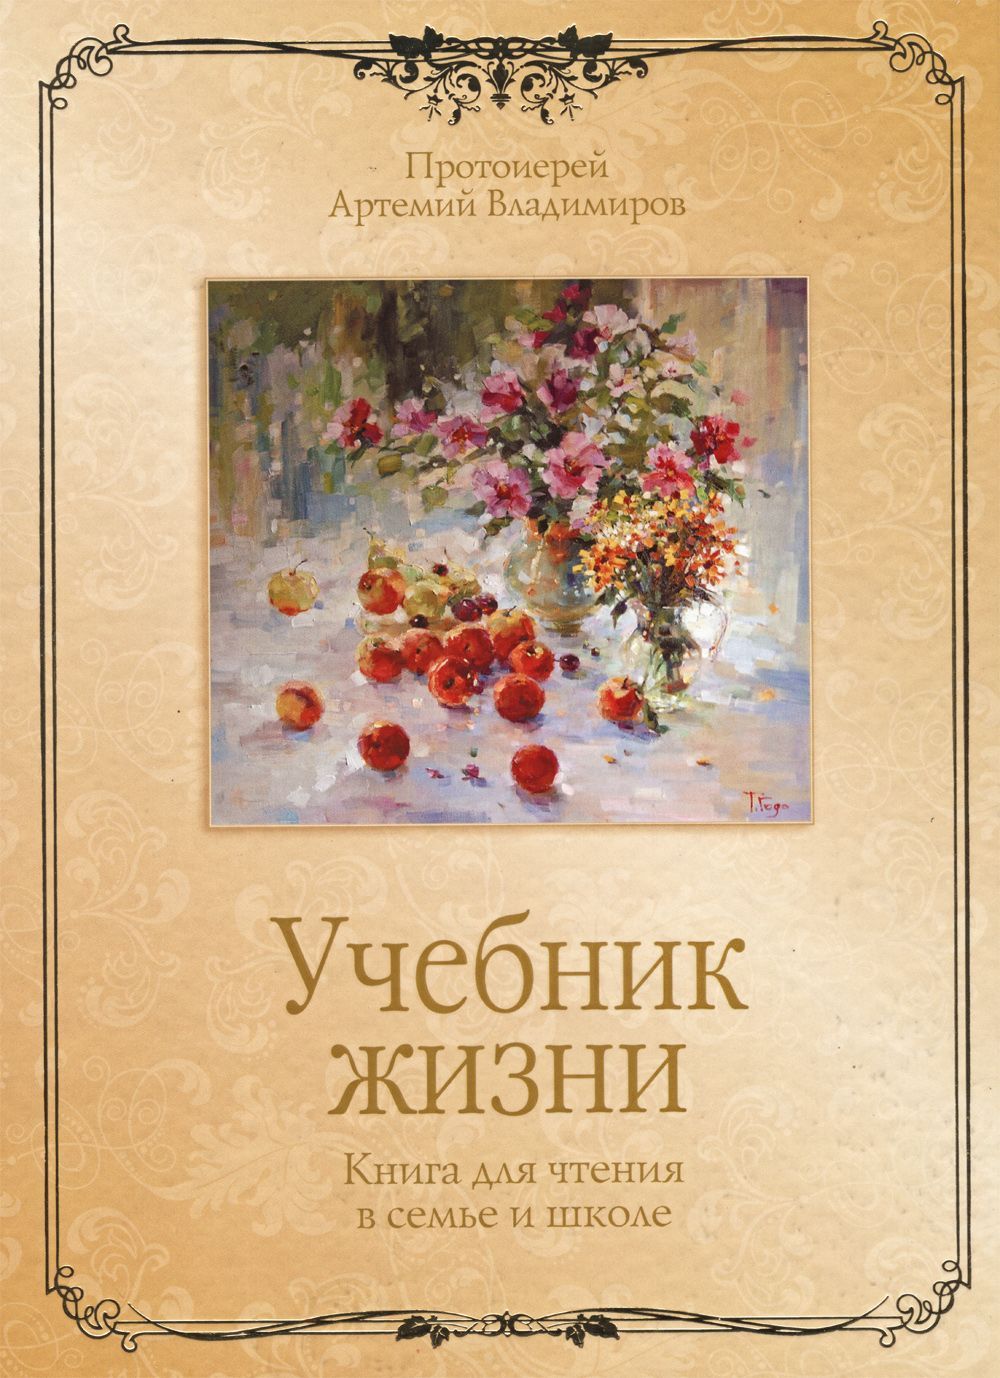 Книга "Учебник жизни" священника Артемия Владимирова (скачать)